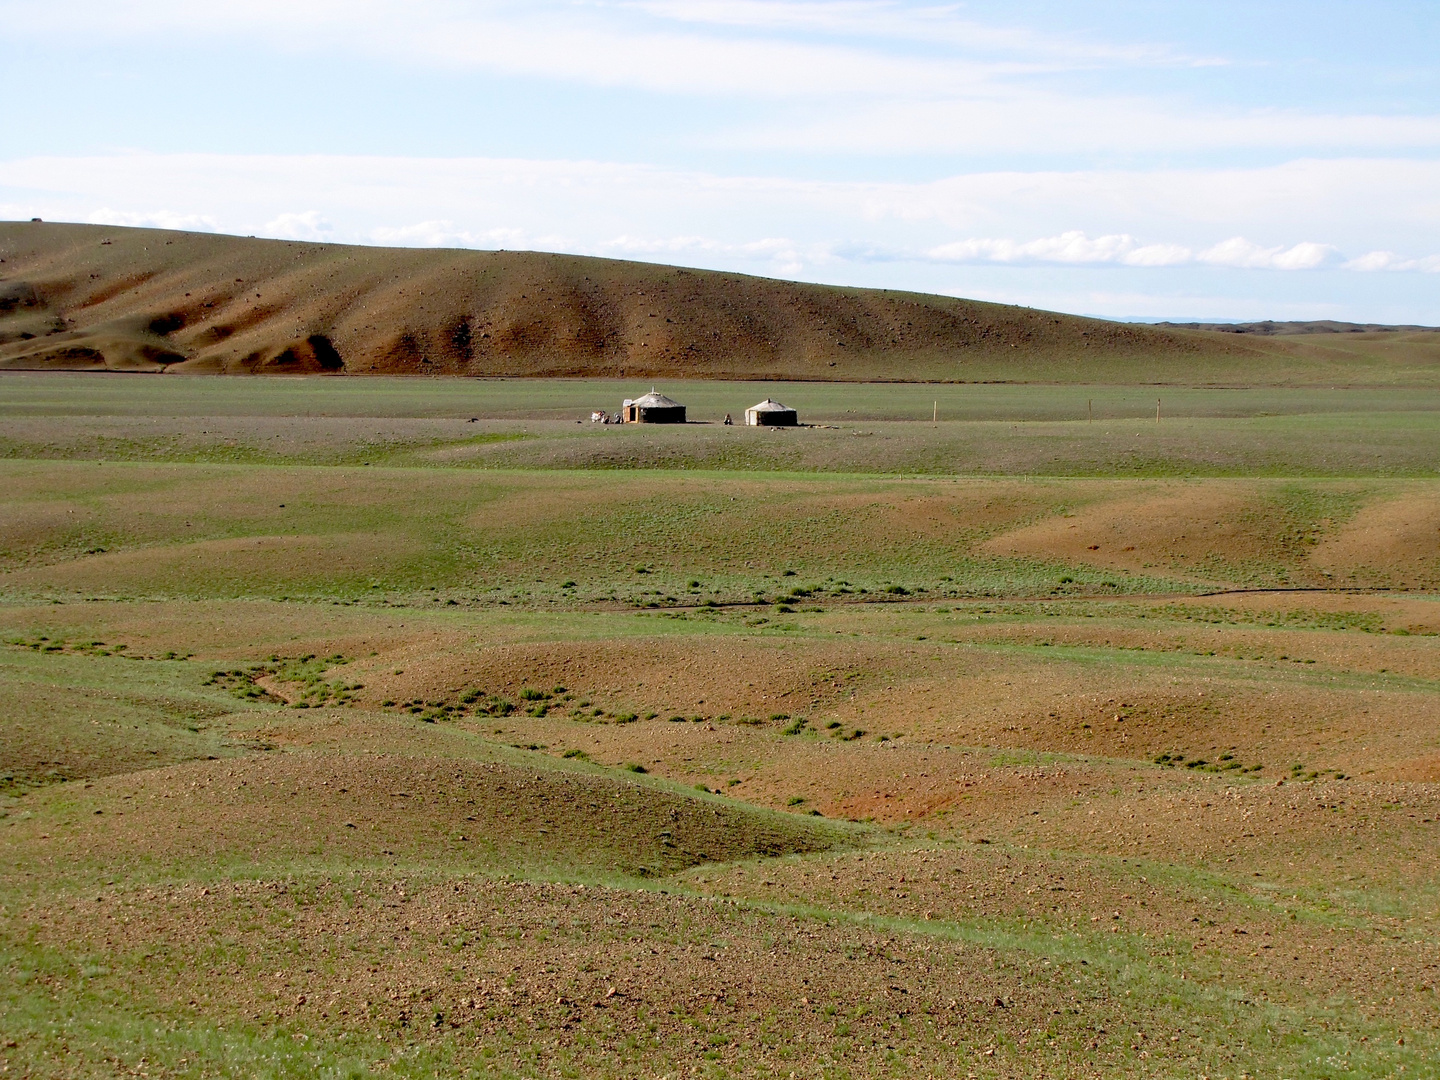 Jurten in der mongolischen Steppe